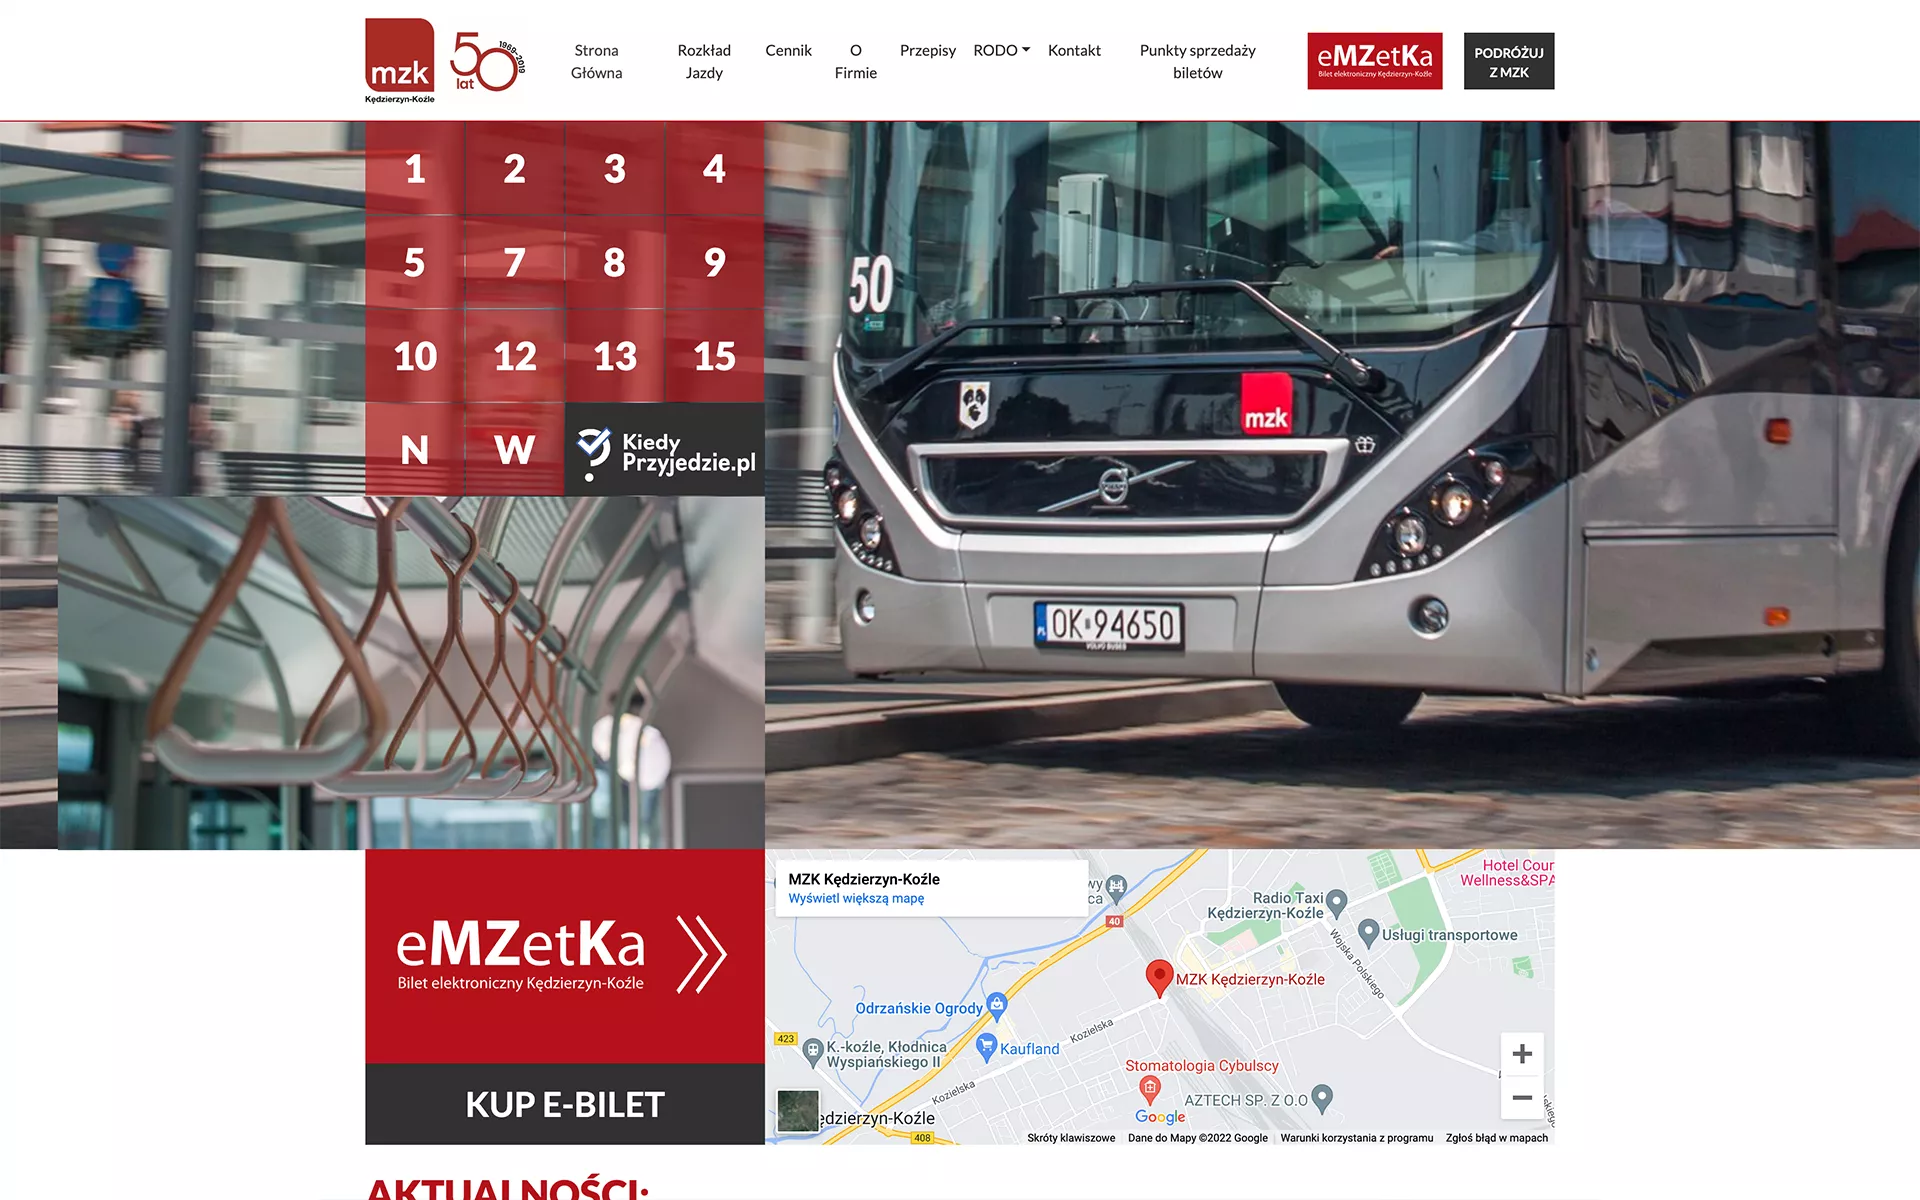 Strona internetowa mzkkk.pl